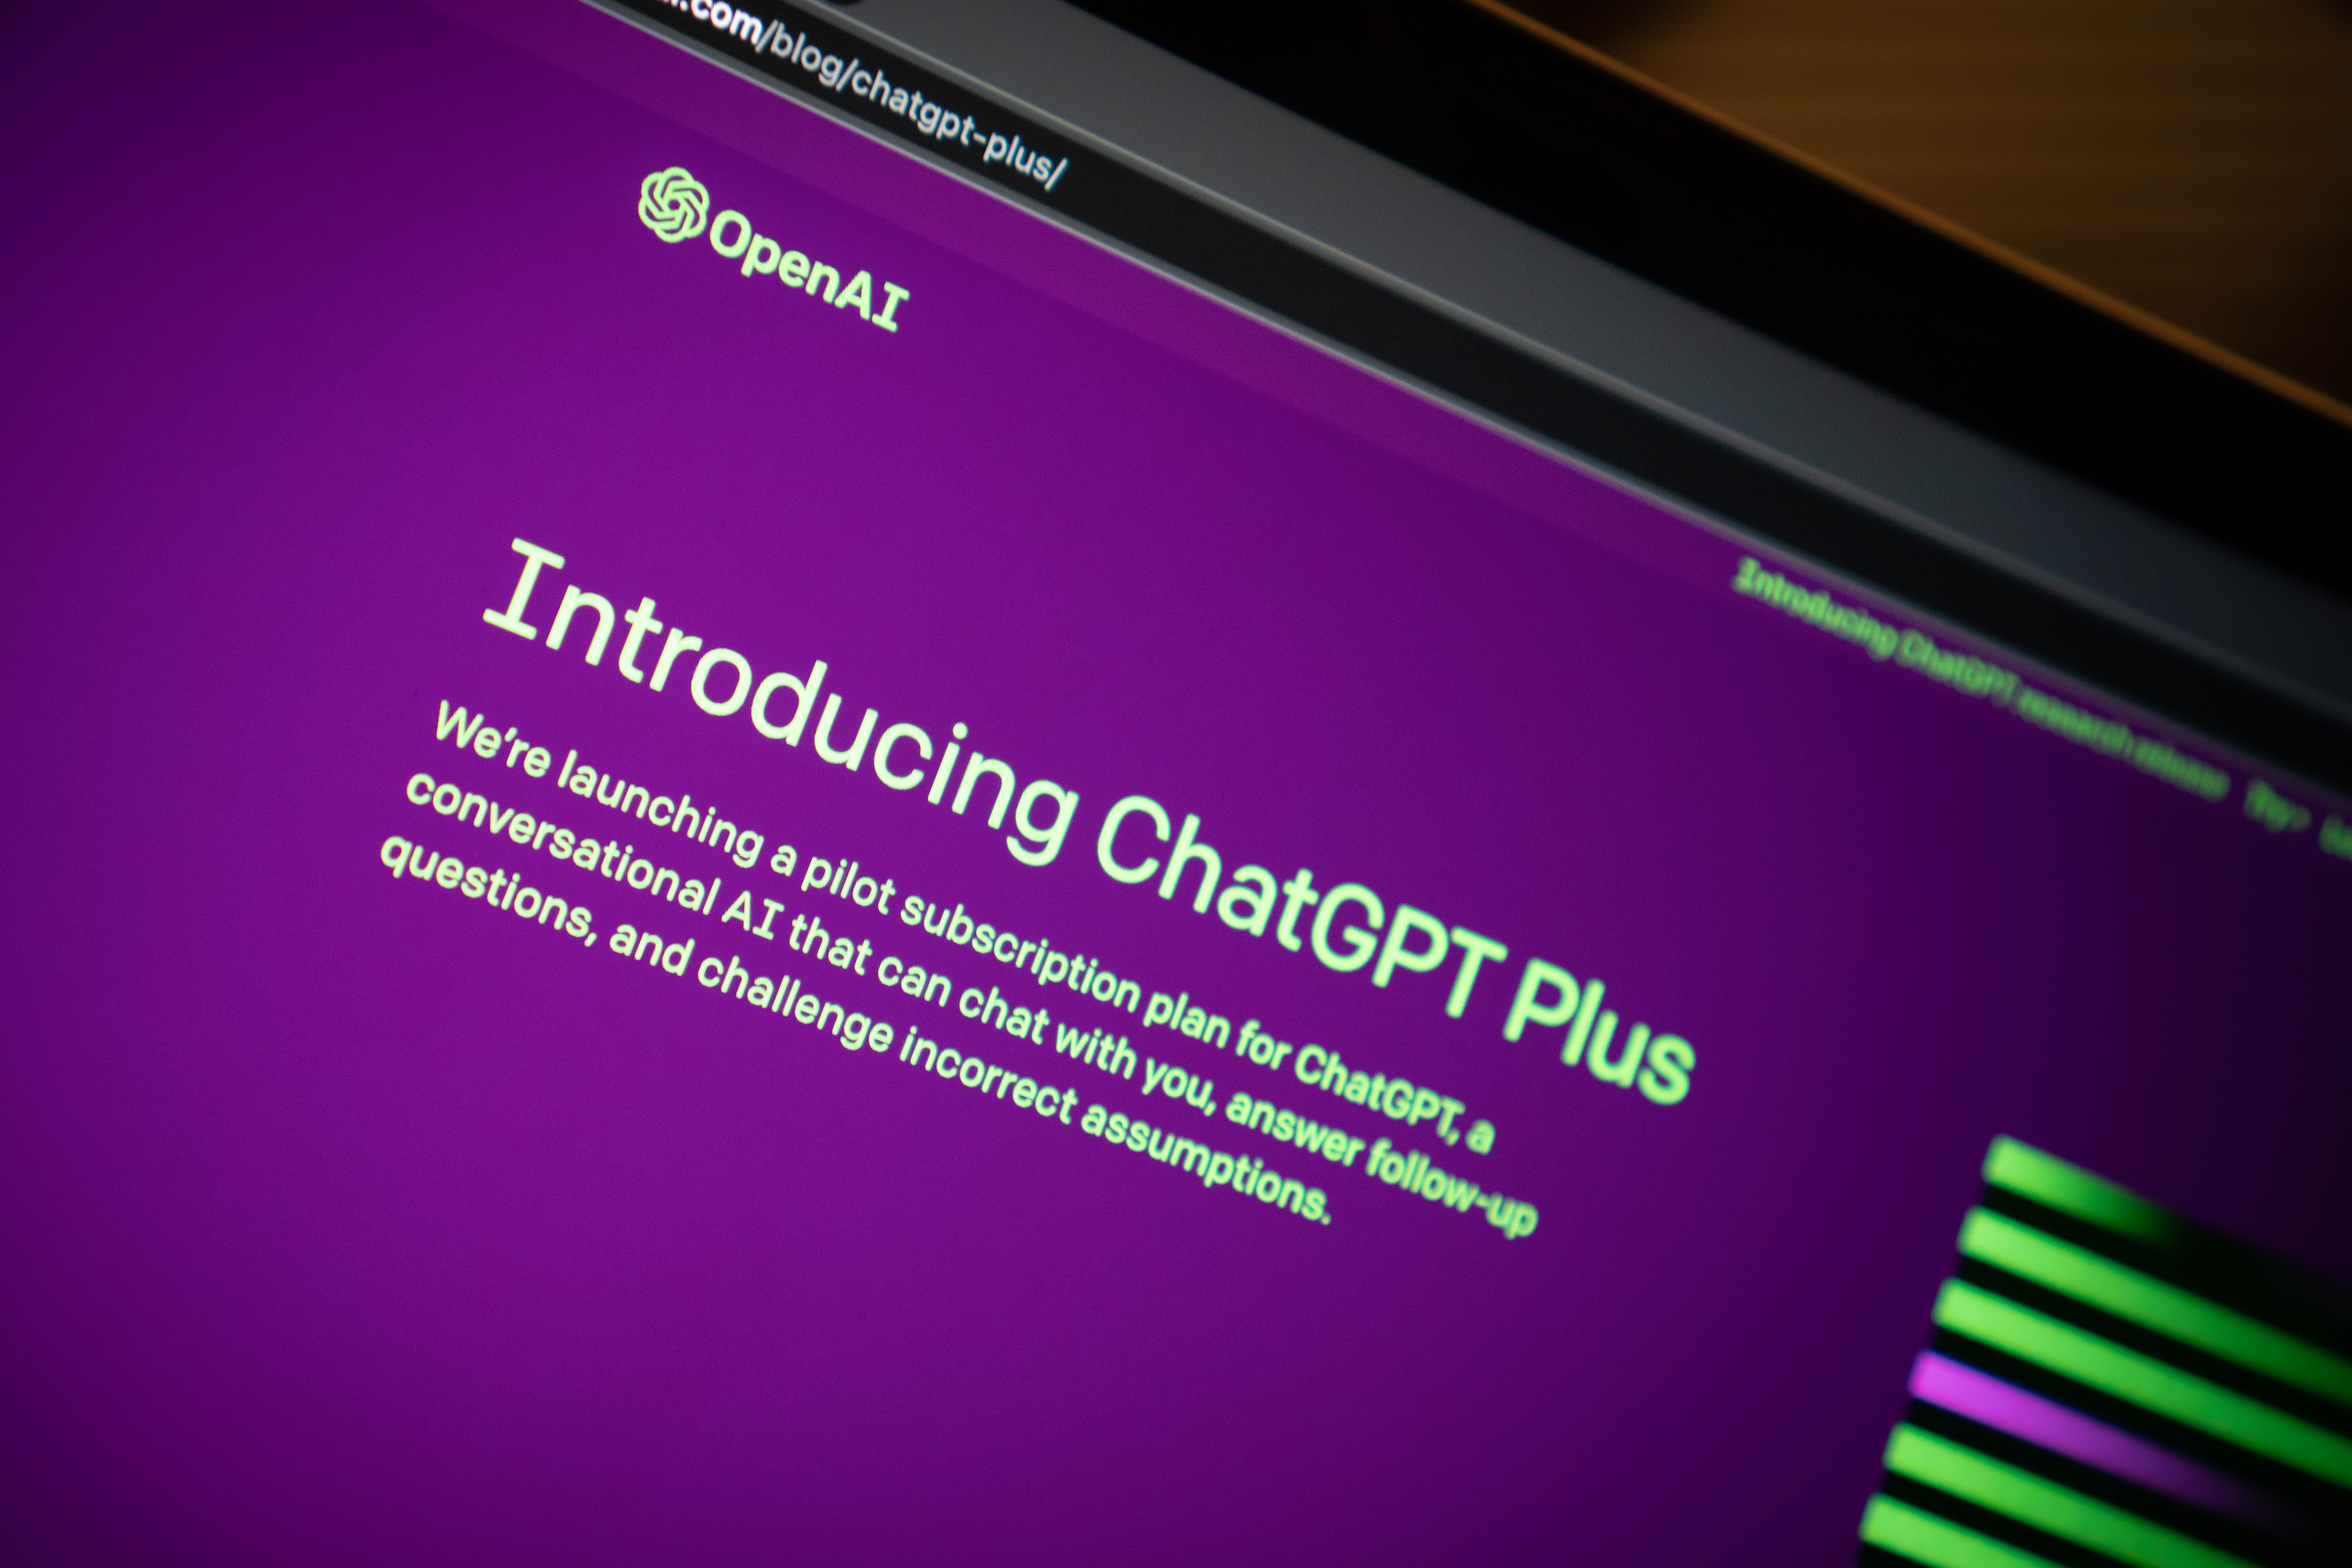 Subskrybenci ChatGPT Plus mają teraz możliwość przesyłania i pracy z plikami.